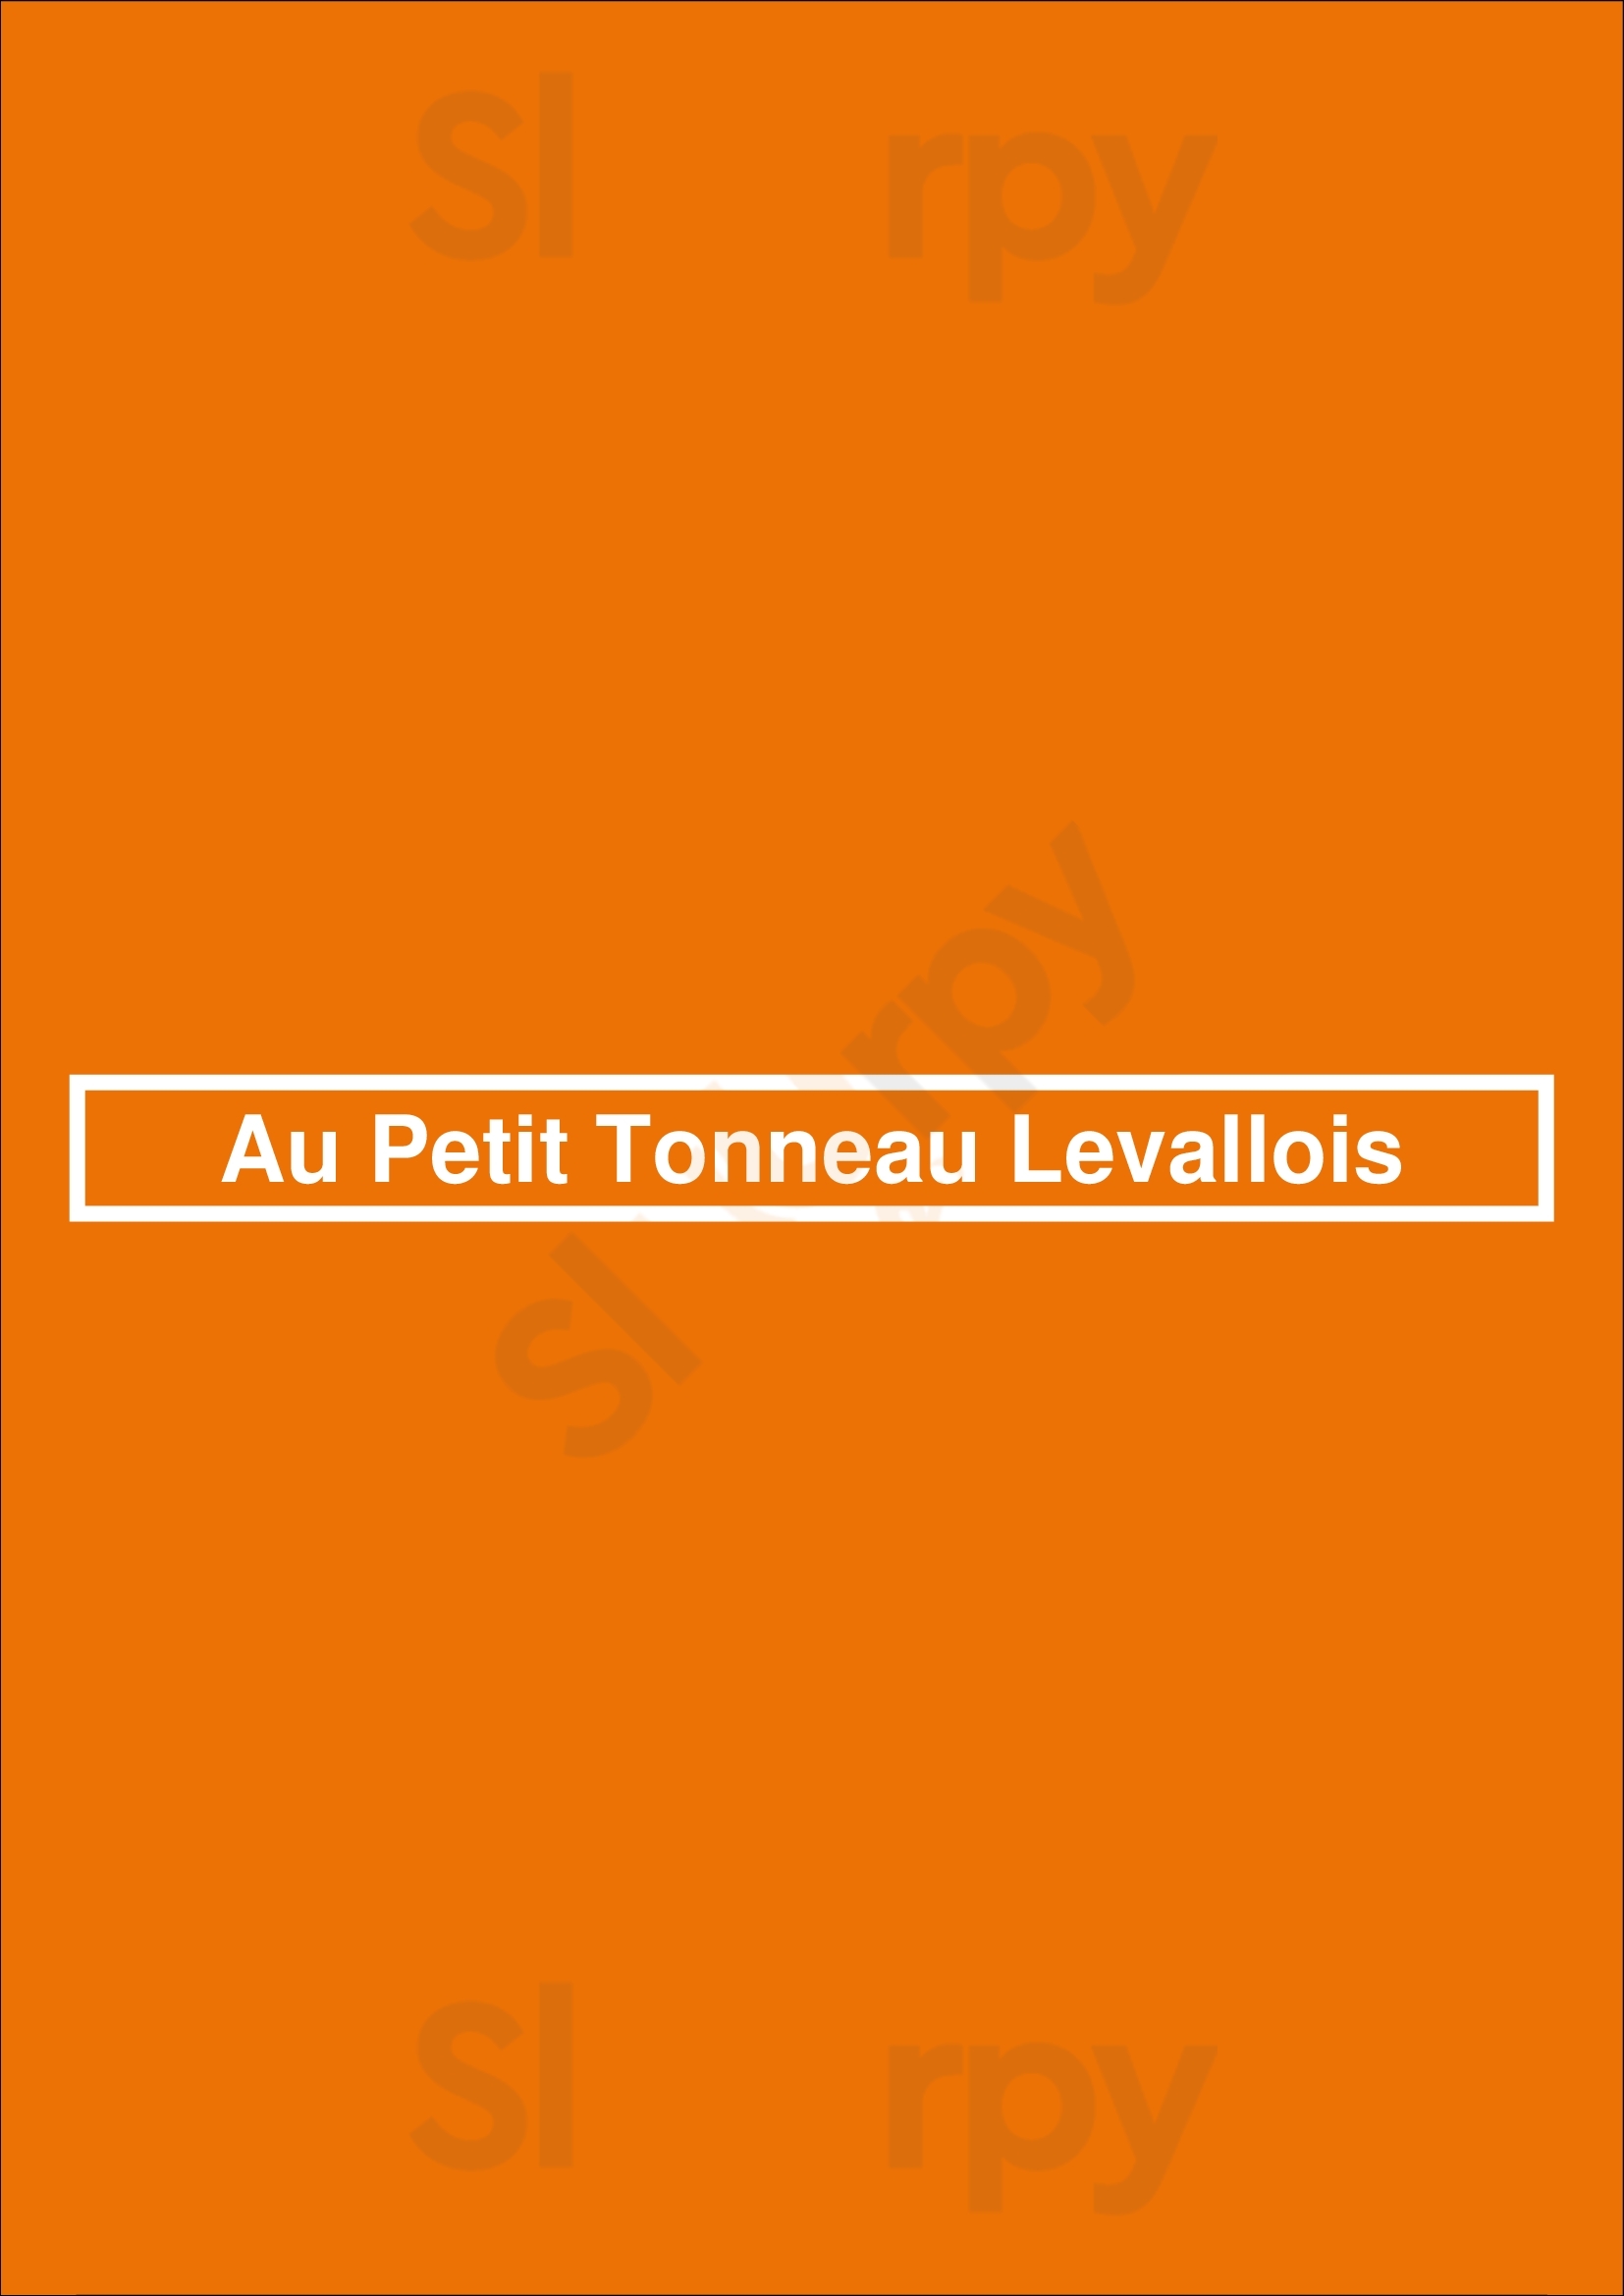 Au Petit Tonneau Levallois Levallois-Perret Menu - 1